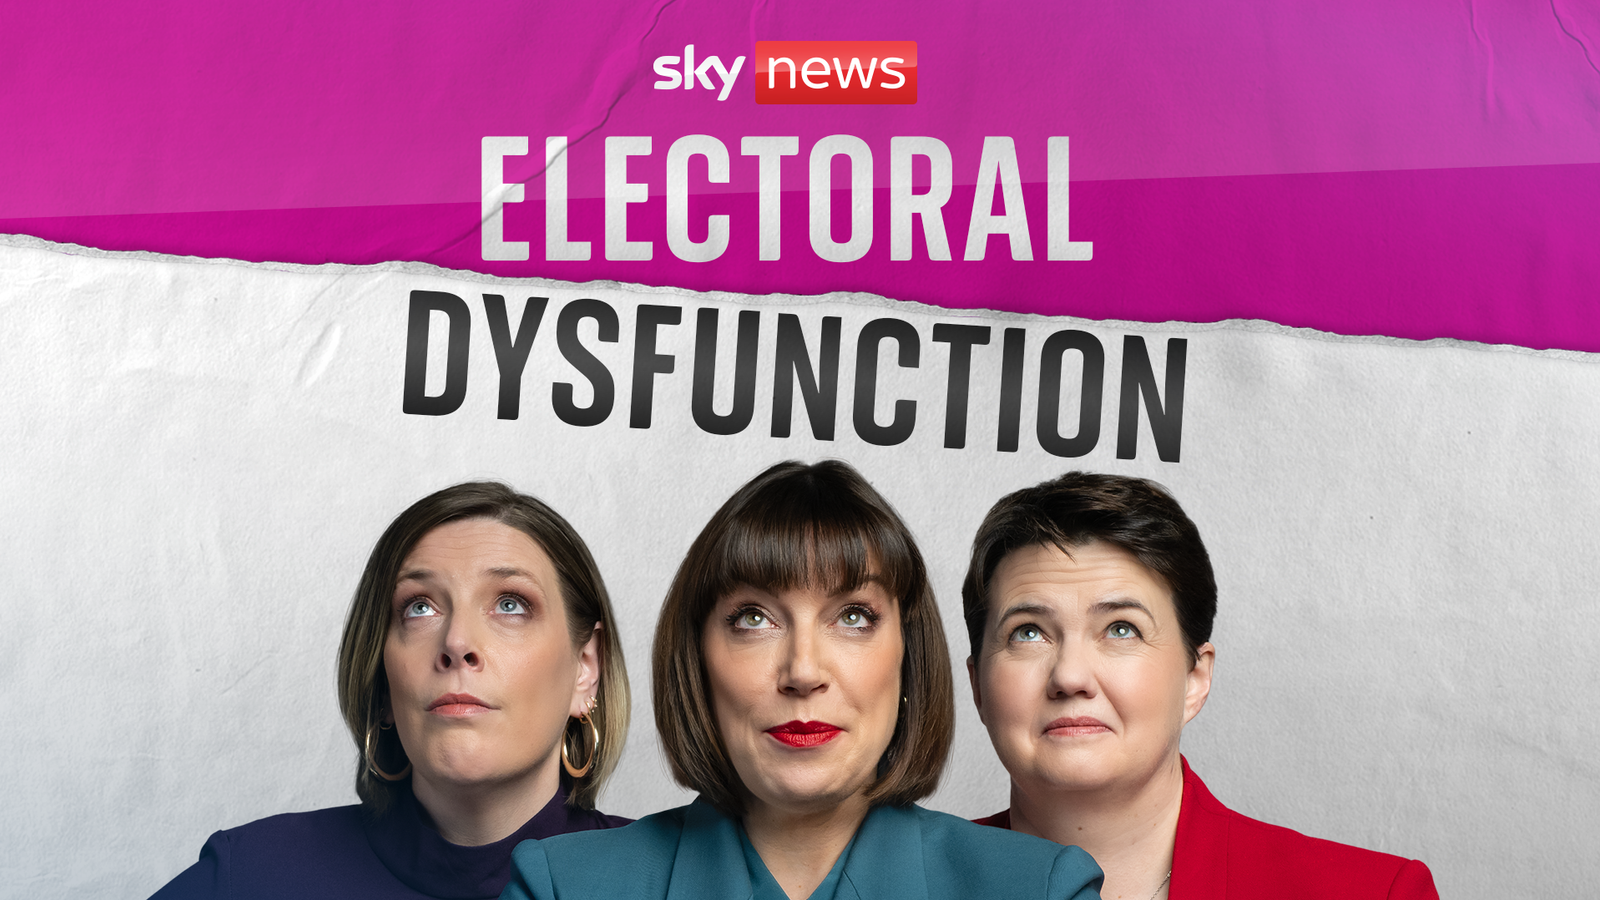 Избирателна дисфункция: Бет Ригби, Джес Филипс и Рут Дейвидсън се обединяват за нов политически подкаст от Sky News